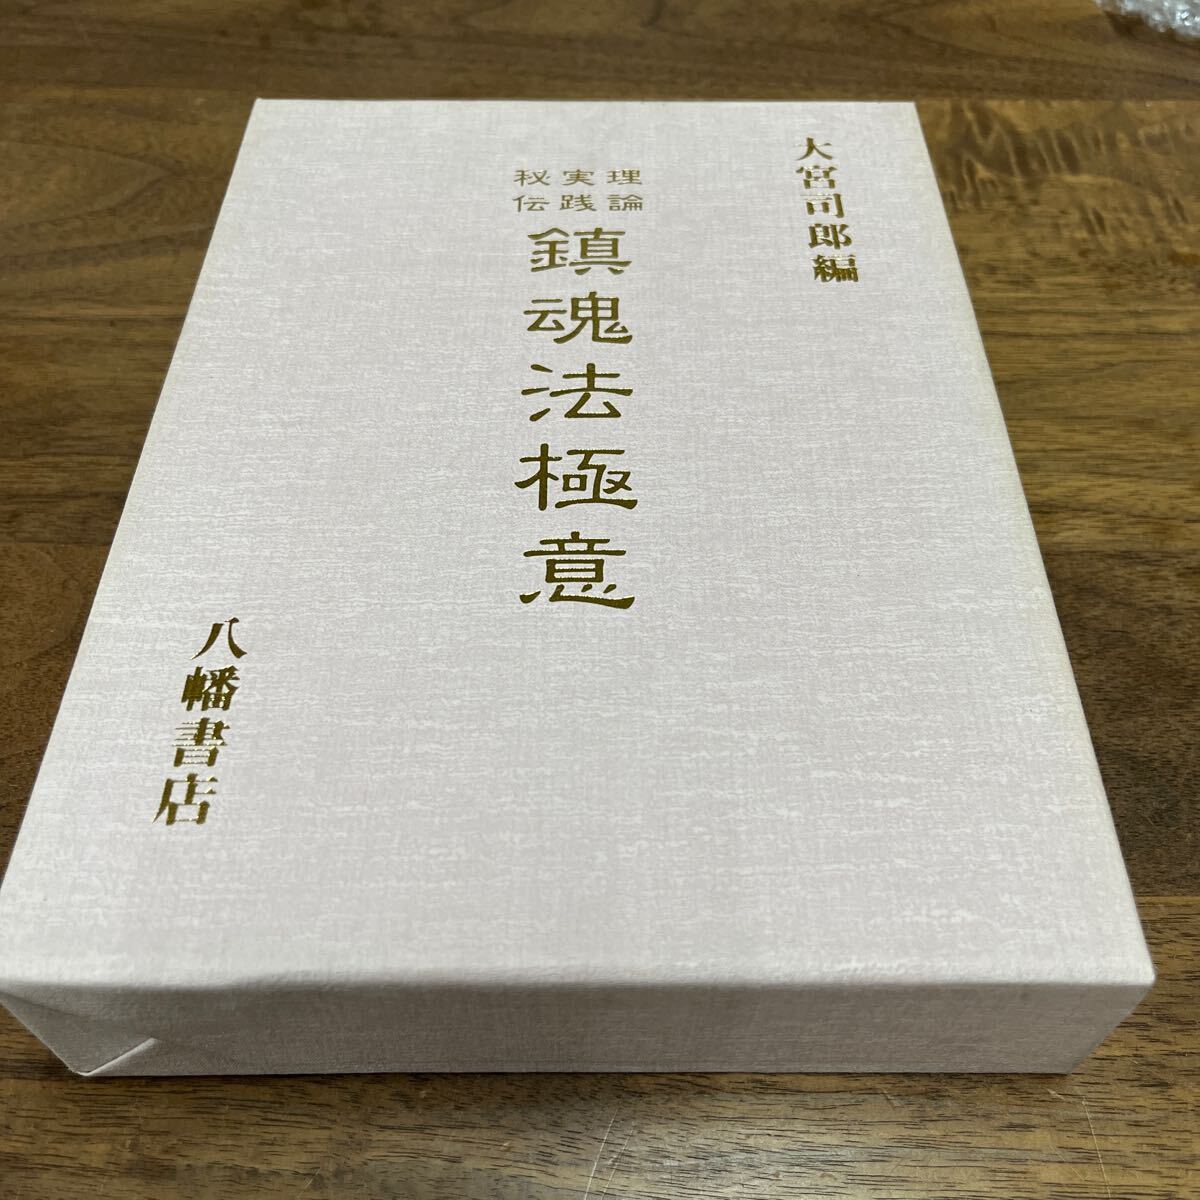 M-1132*60 размер теория практика ... душа закон высшее смысл Omiya .. сборник Hachiman книжный магазин Omiya .. эпоха Heisei 9 год первая версия выпуск обычная цена 12,000 иен 